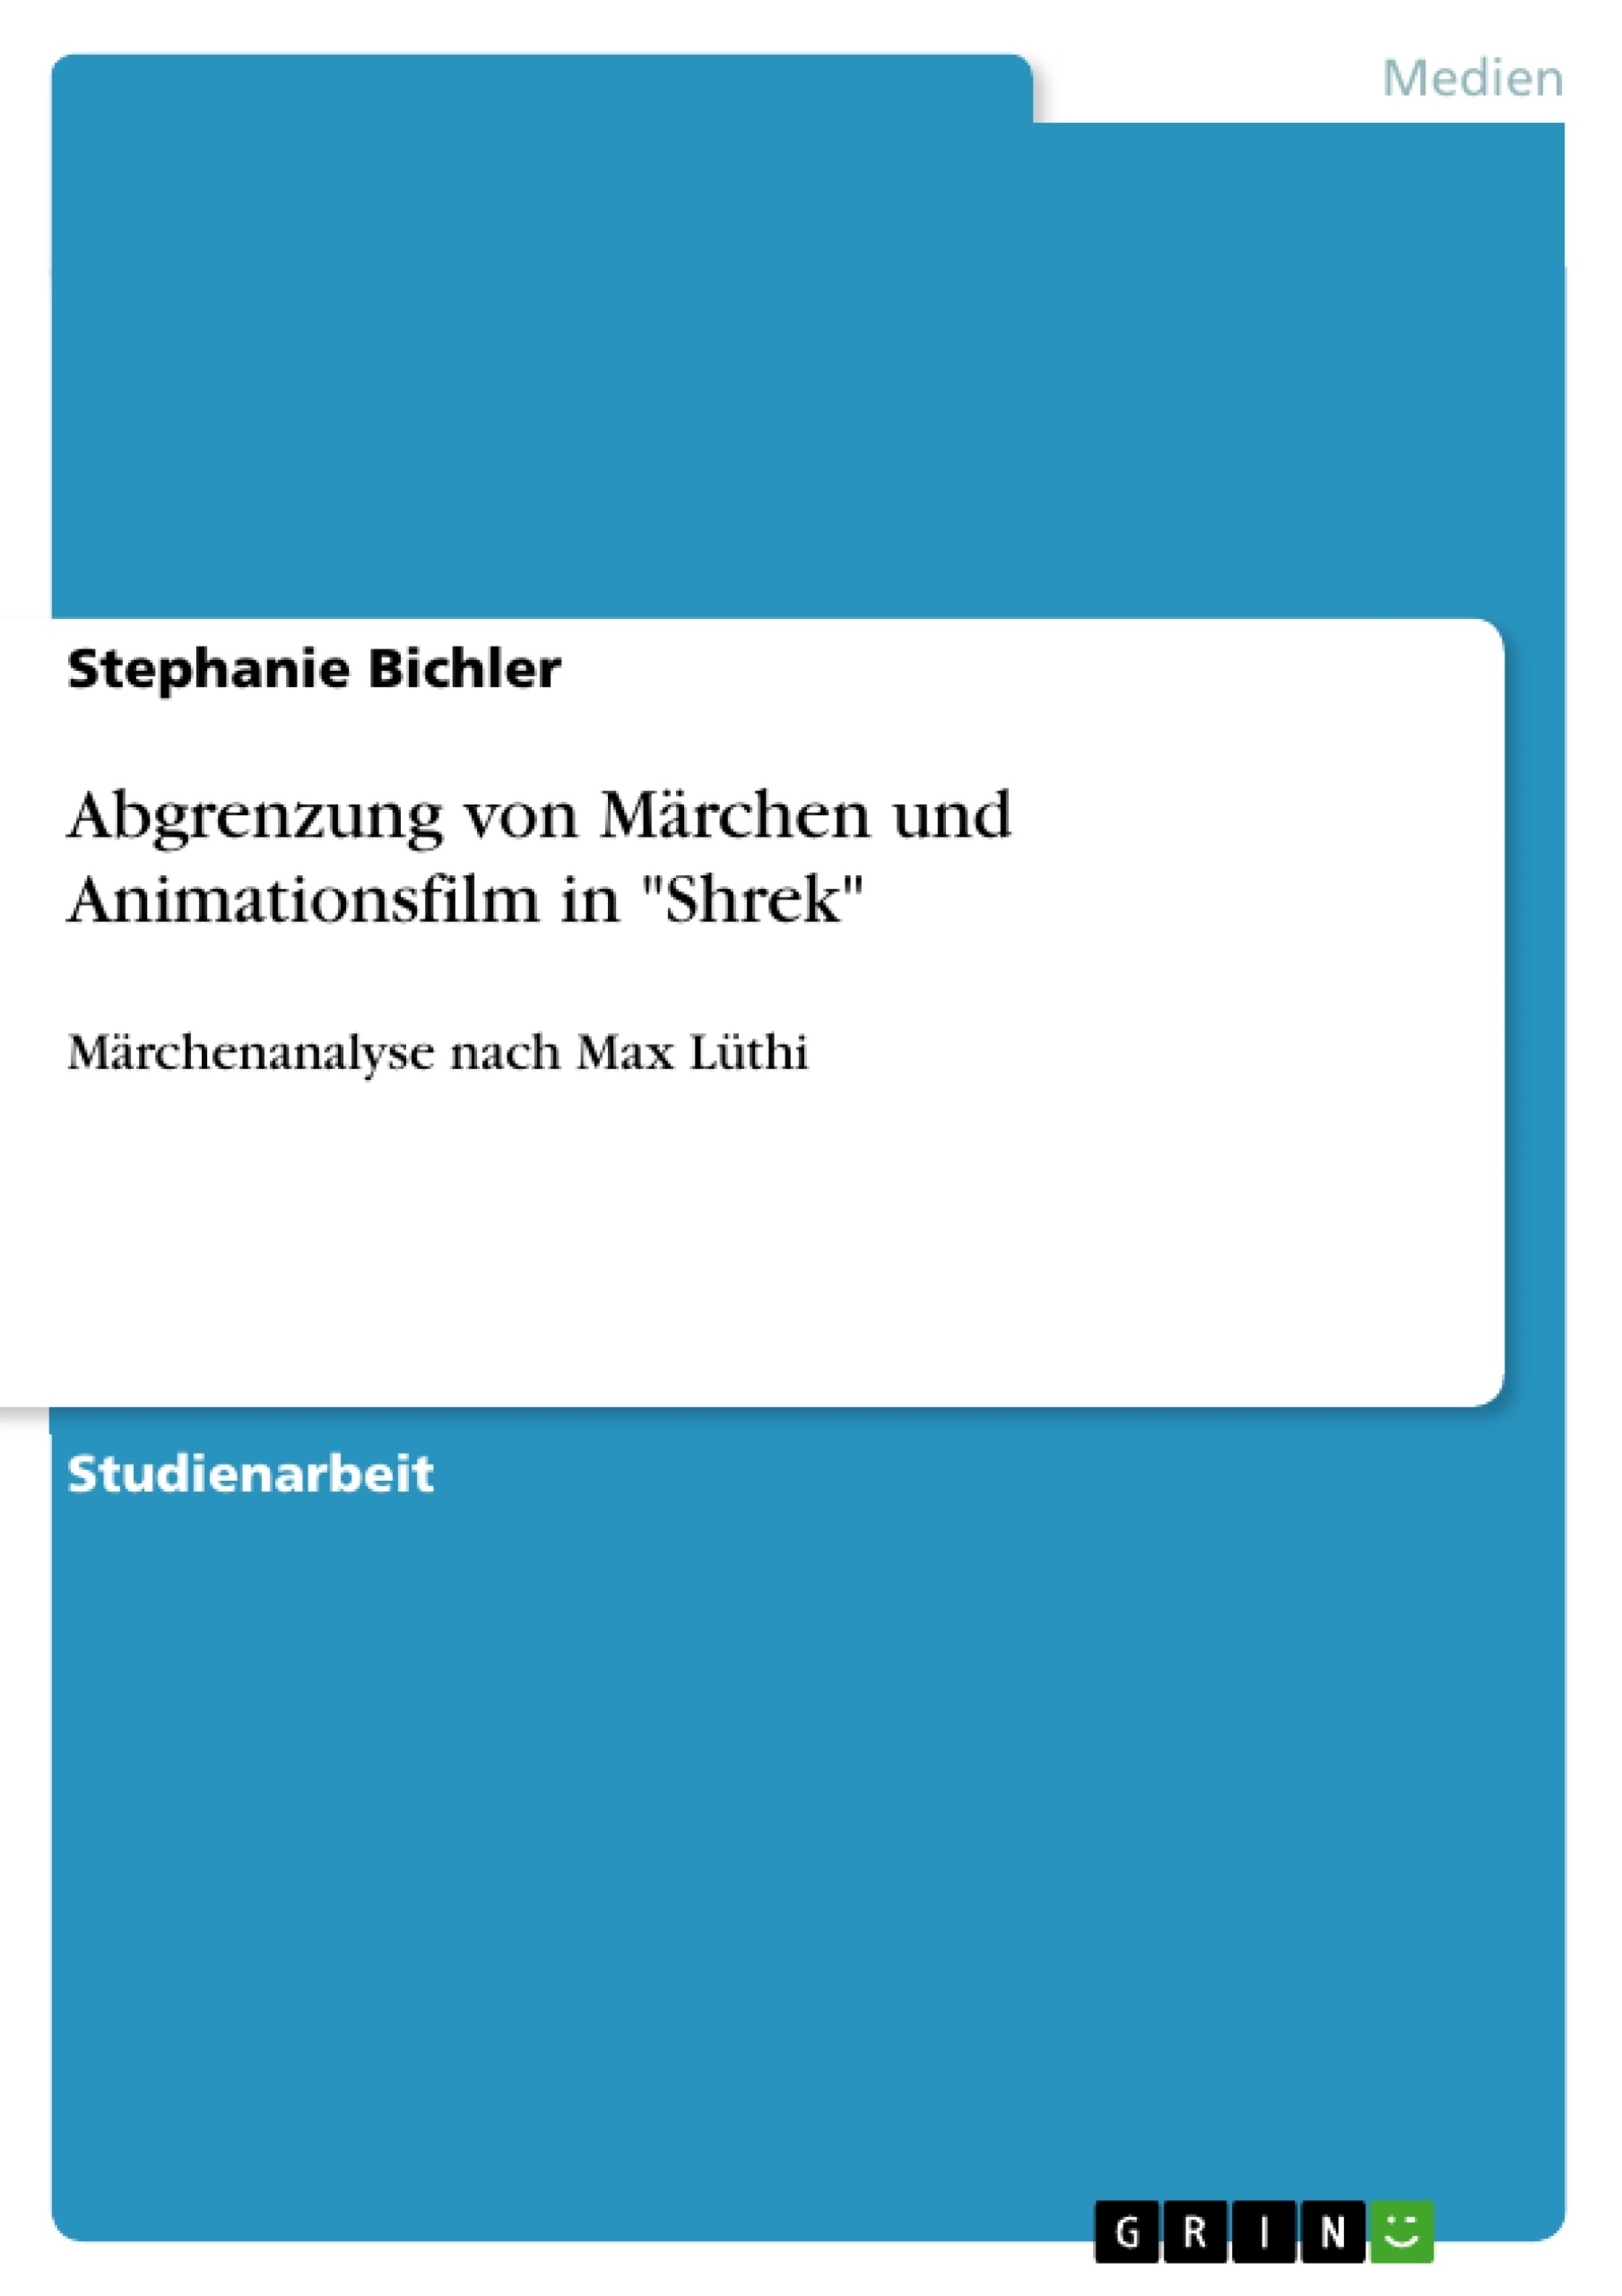 Titre: Abgrenzung von Märchen und Animationsfilm in "Shrek"